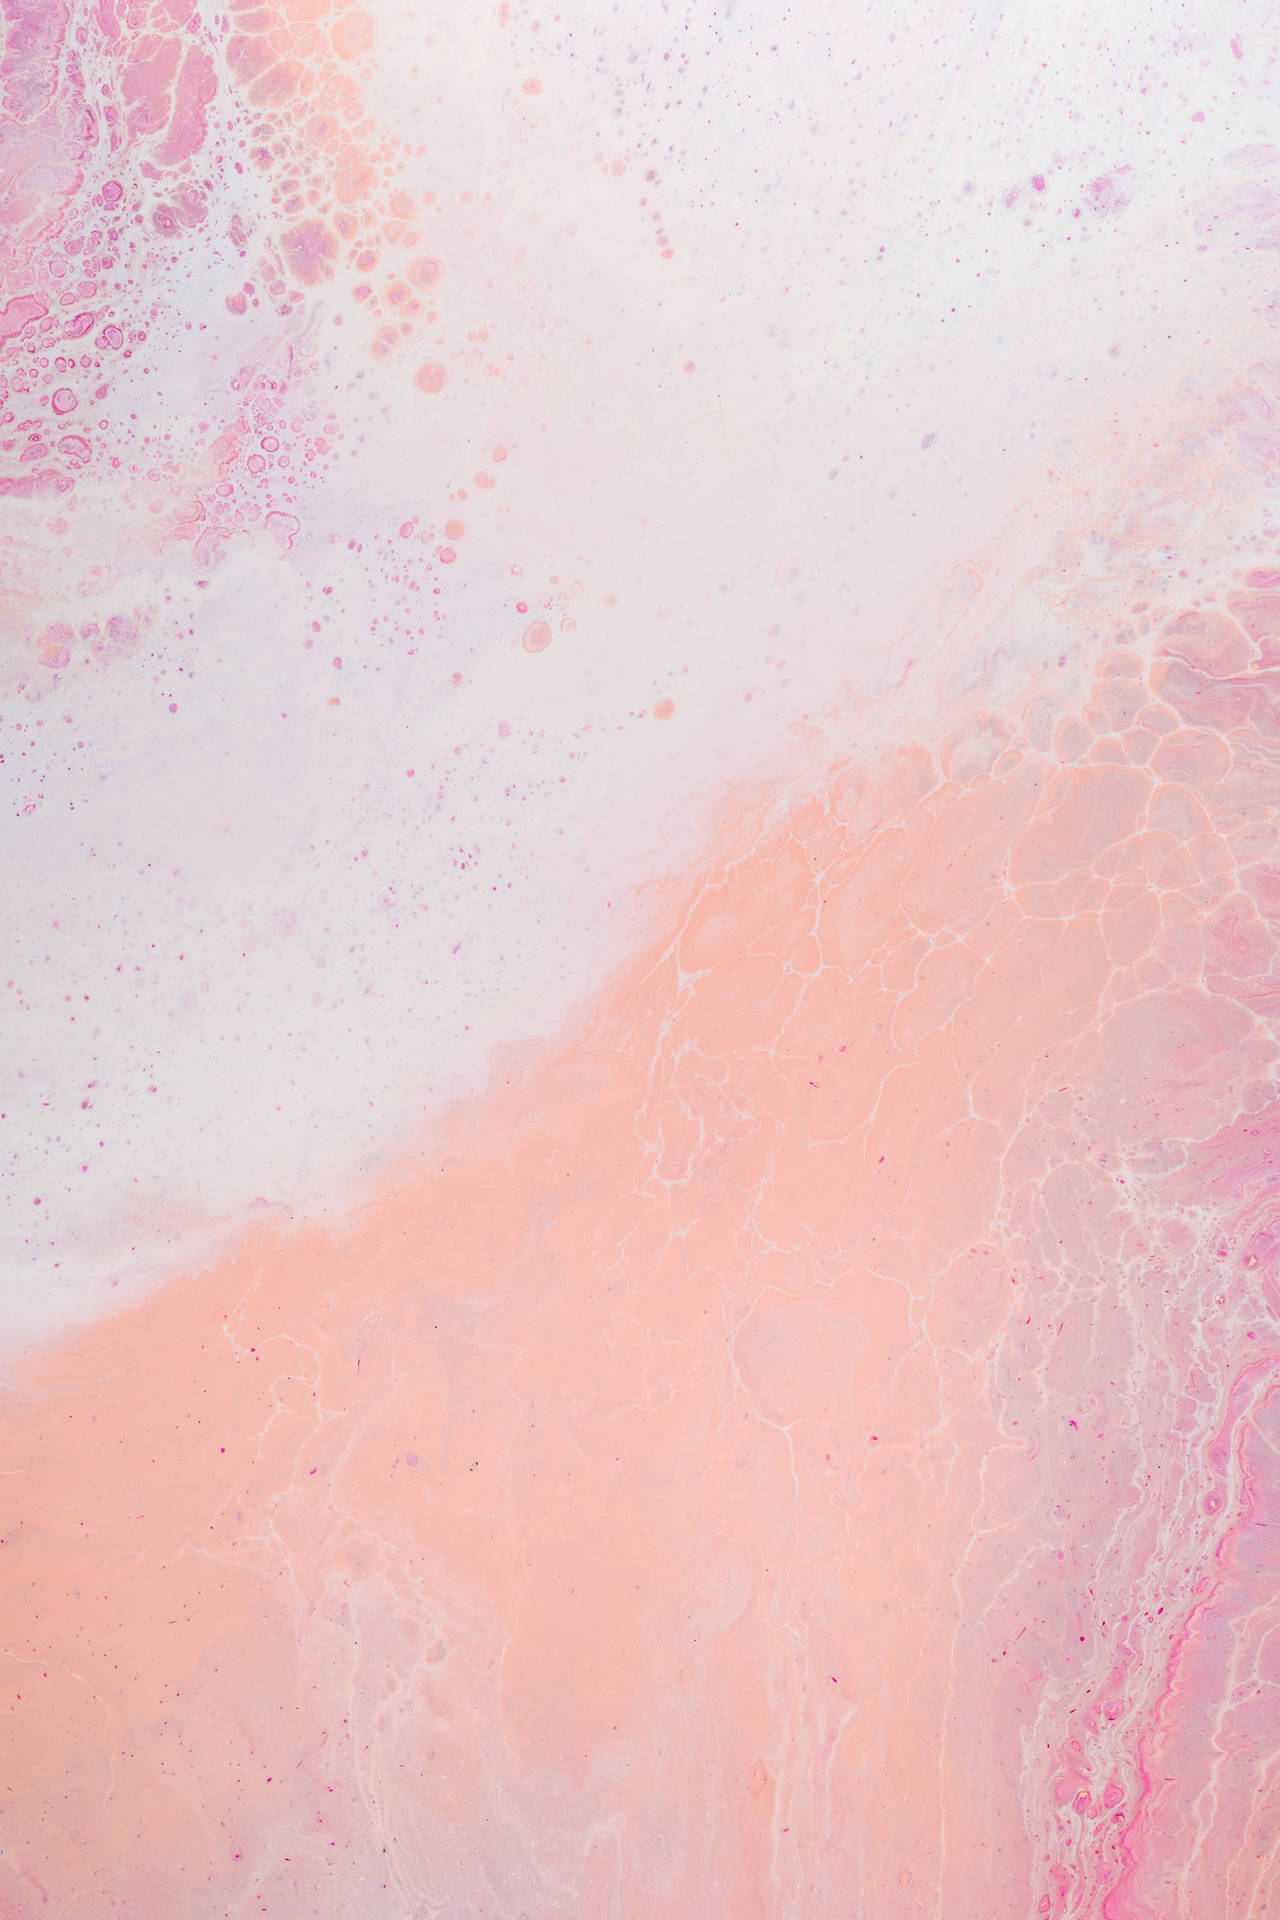 An Elegant Display Of Pastel Pink Blooms. Wallpaper